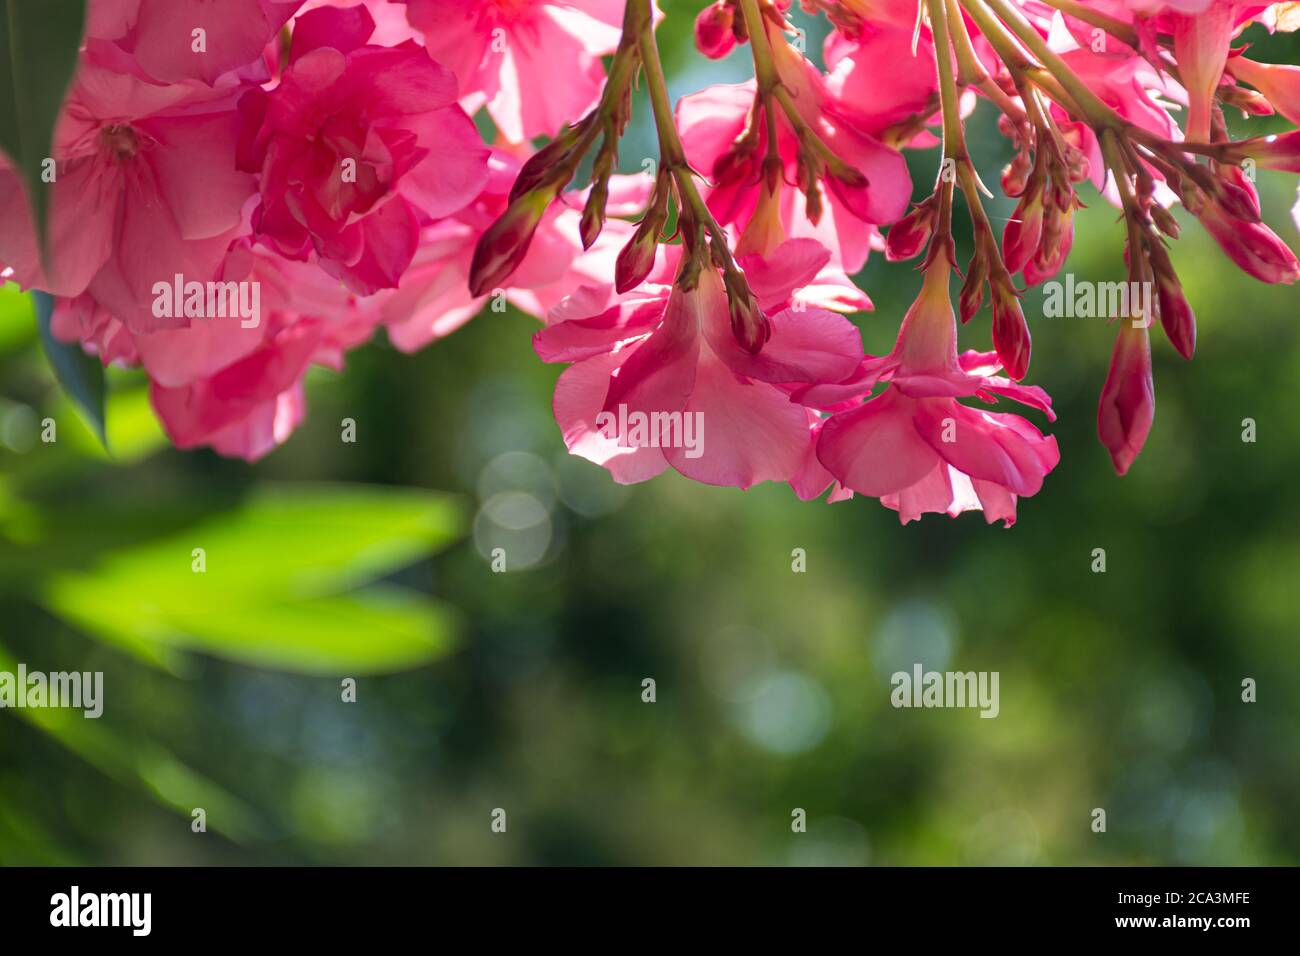 Oleander rosa lat. Nerium ist eine immergrüne Südpflanze. Rosafarbene exotische Blüten im selektiven Fokus. Schöner Hintergrund für eine Postkarte. Sommer hell f Stockfoto